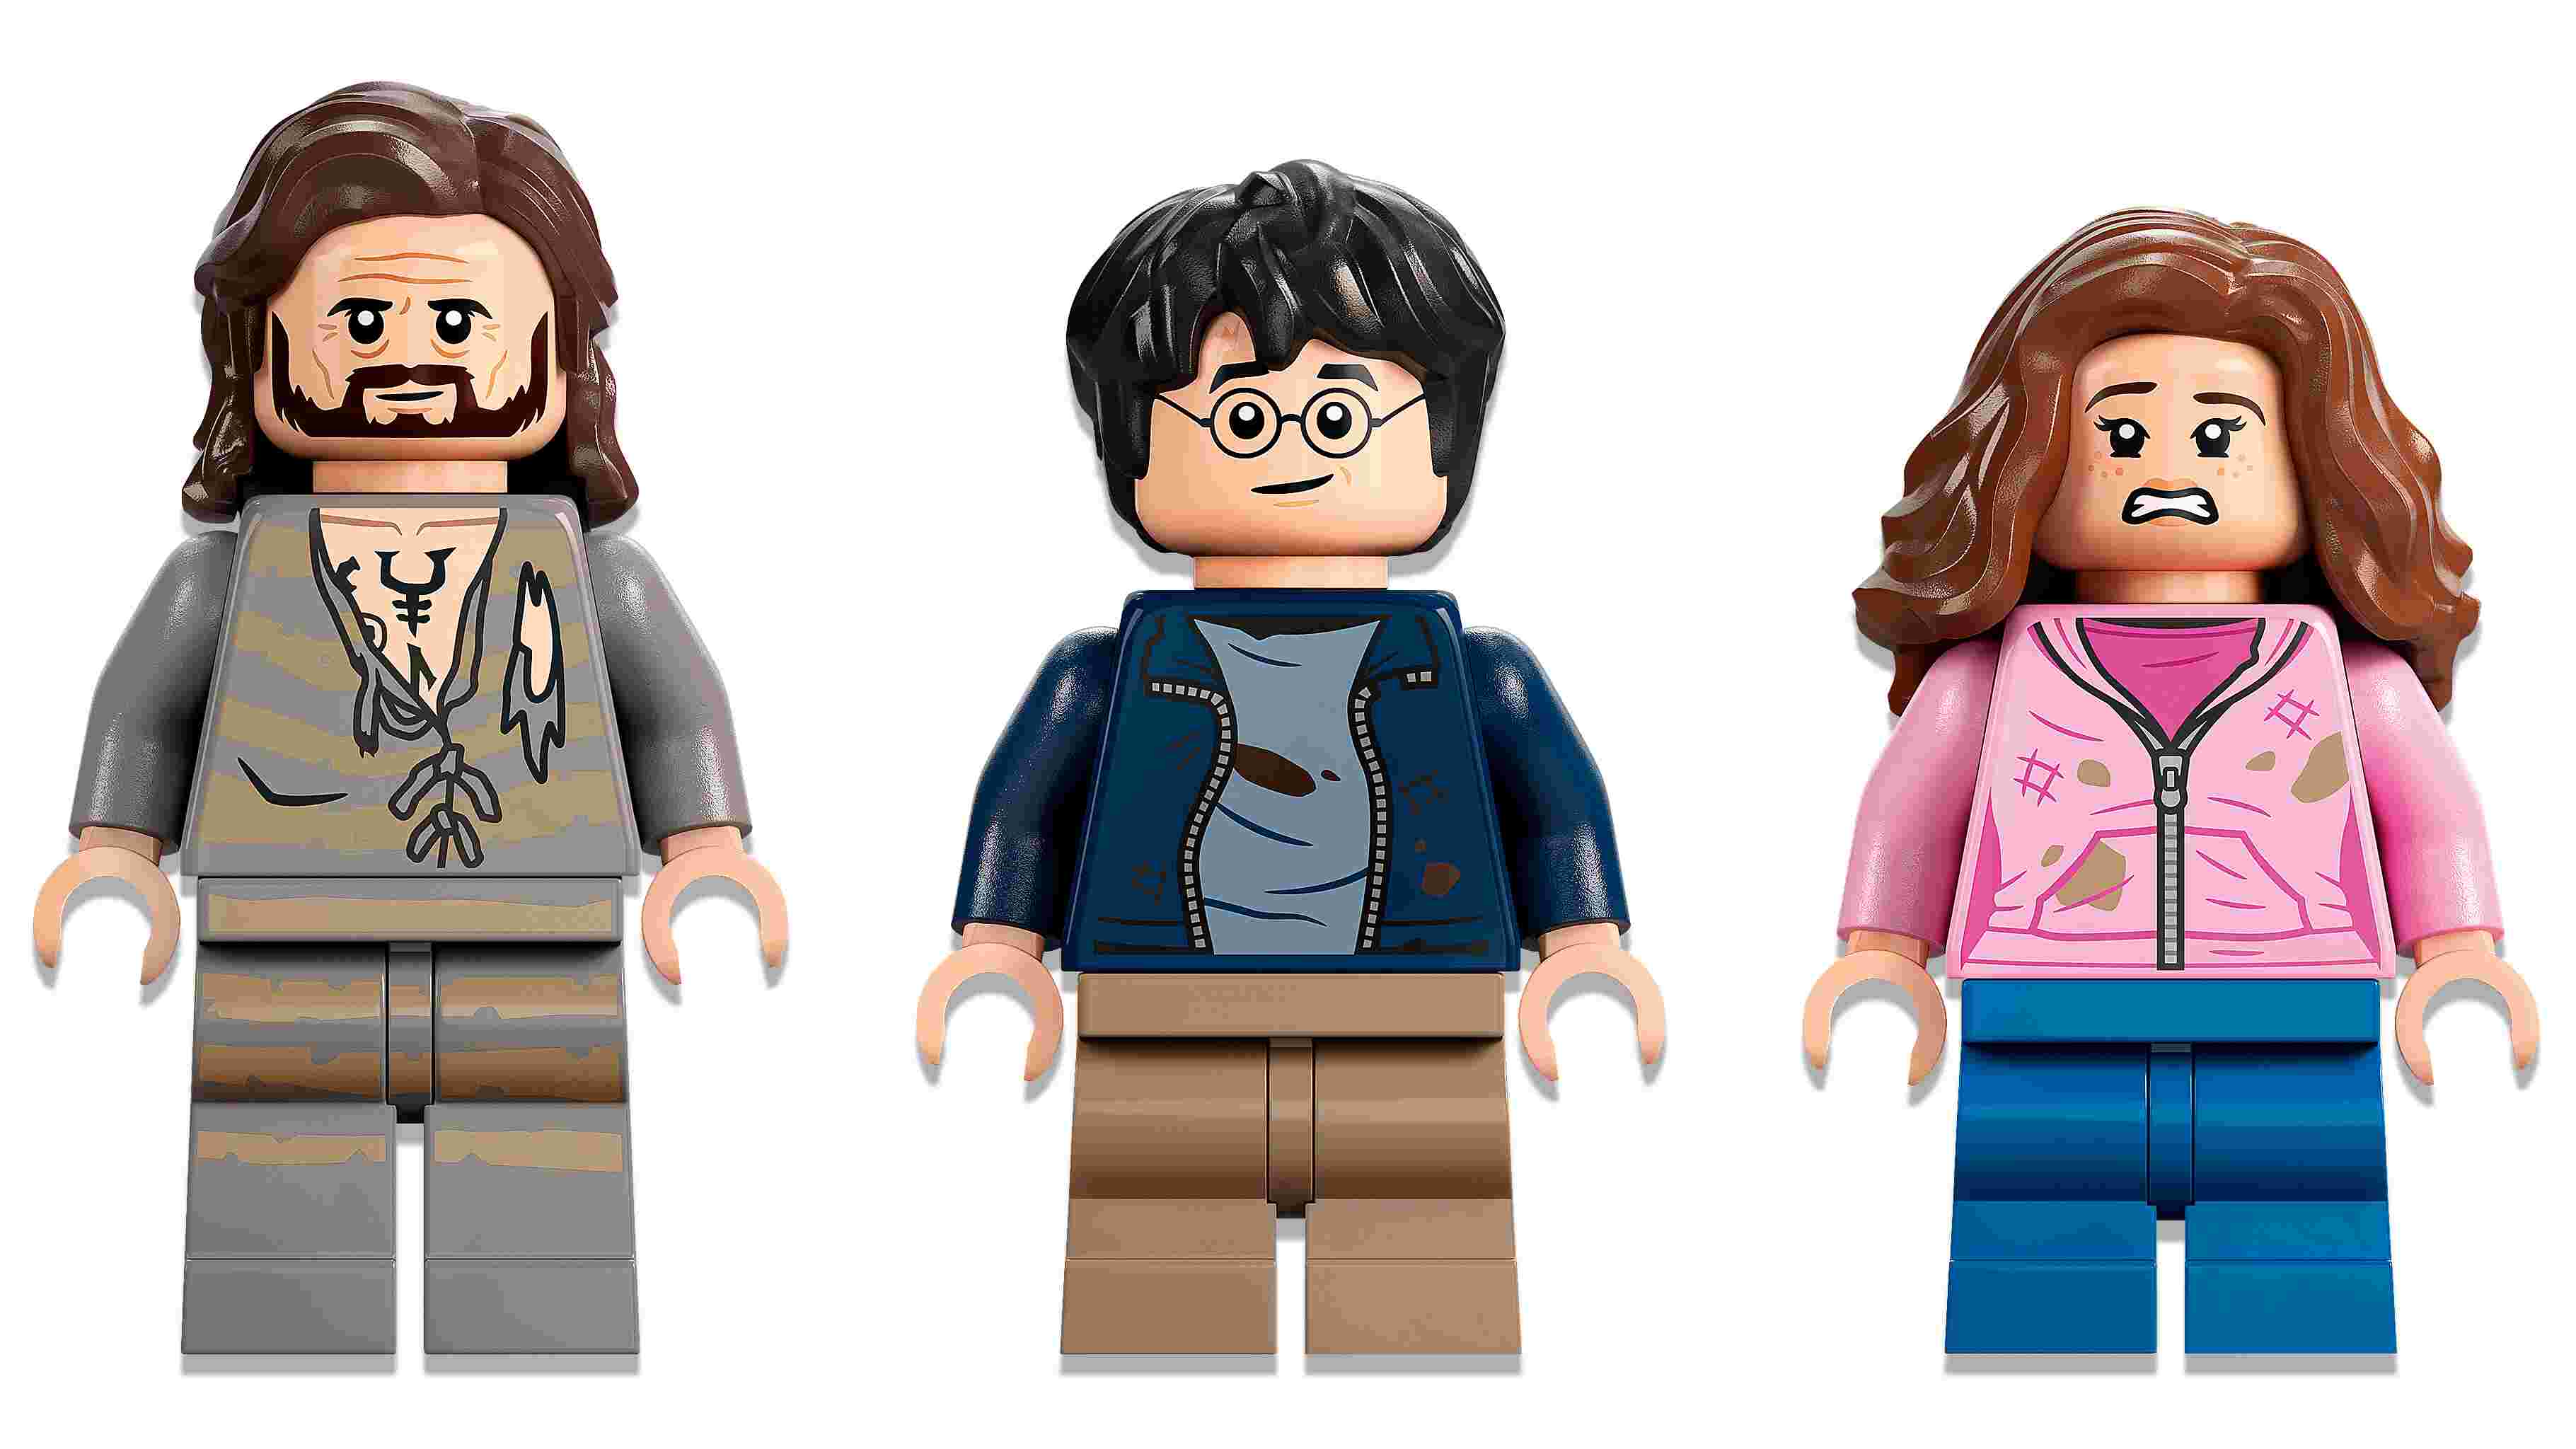 LEGO 76401 Harry Potter Hogwarts: Sirius’ Rettung aus der Gefangene von Askaban